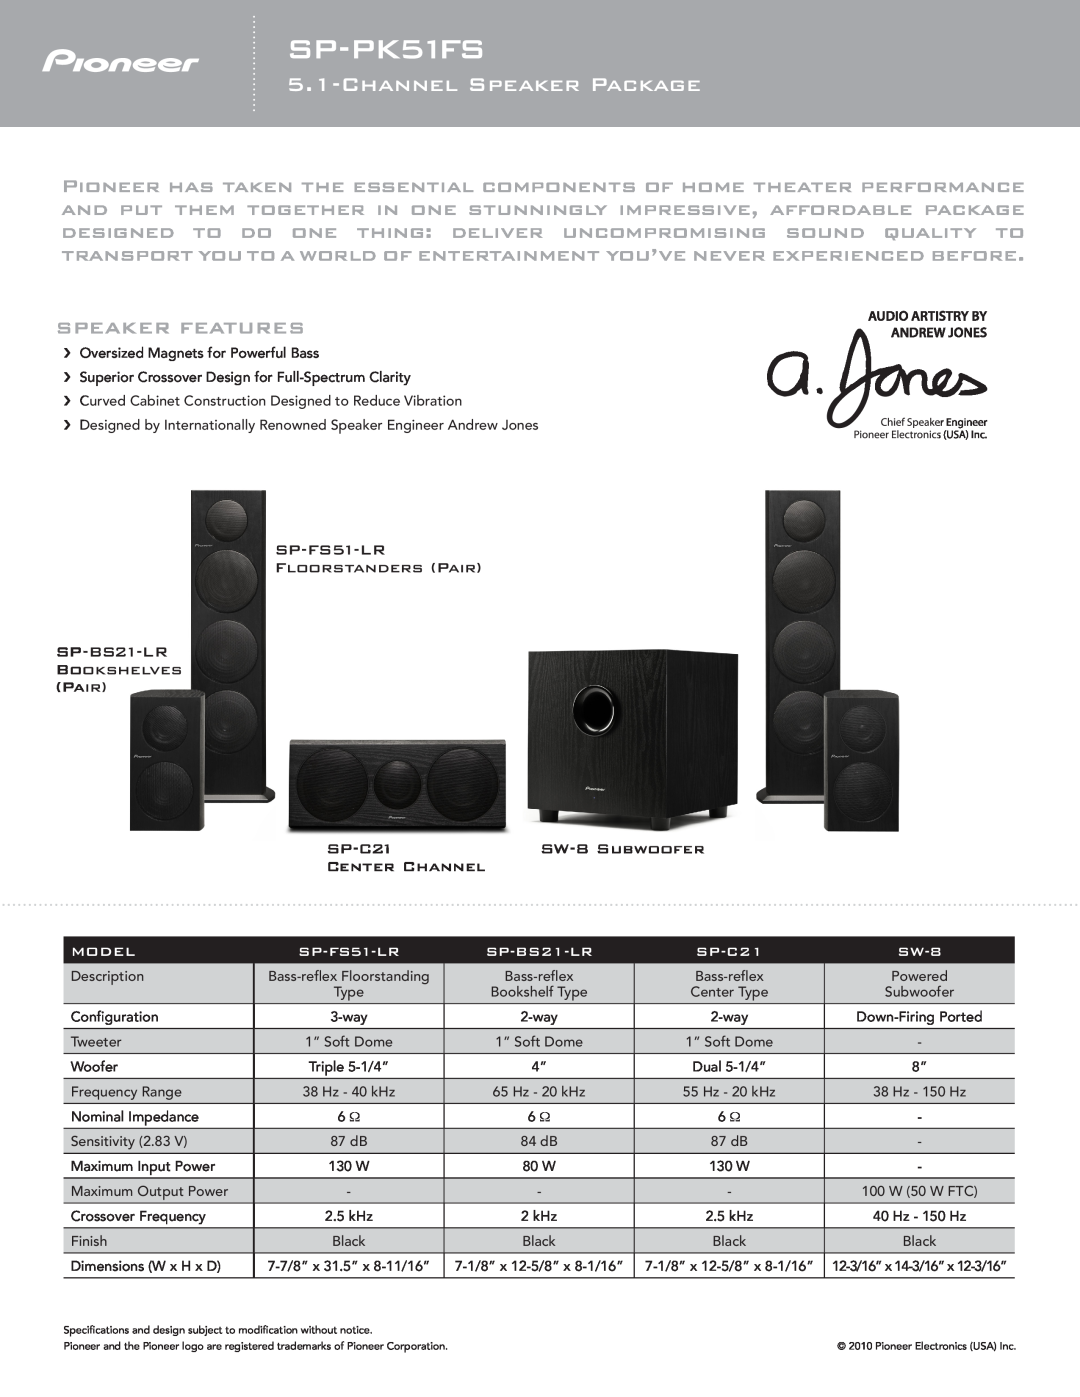 Pioneer SP-PK51FS specifications Channelspeaker Package, Speaker Features, SP-FS51-LR FLOORSTANDERS PAIR, SP-C21, Model 